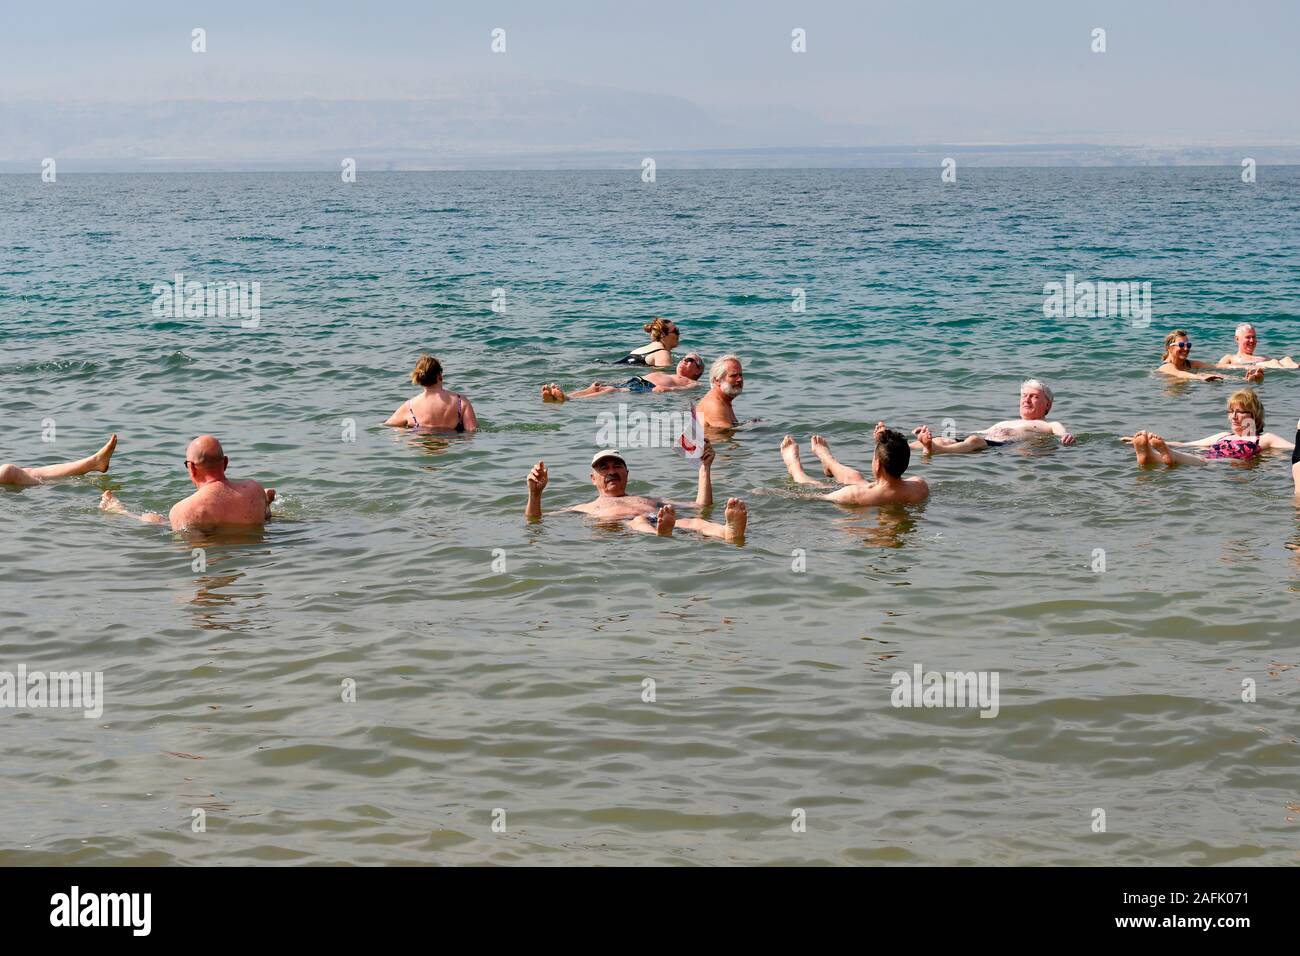 Dead Sea, Jordan - March 05, 2019: Unidentified people enjoy a swim in the salt lake, unsinkable for heavy salinity Stock Photo